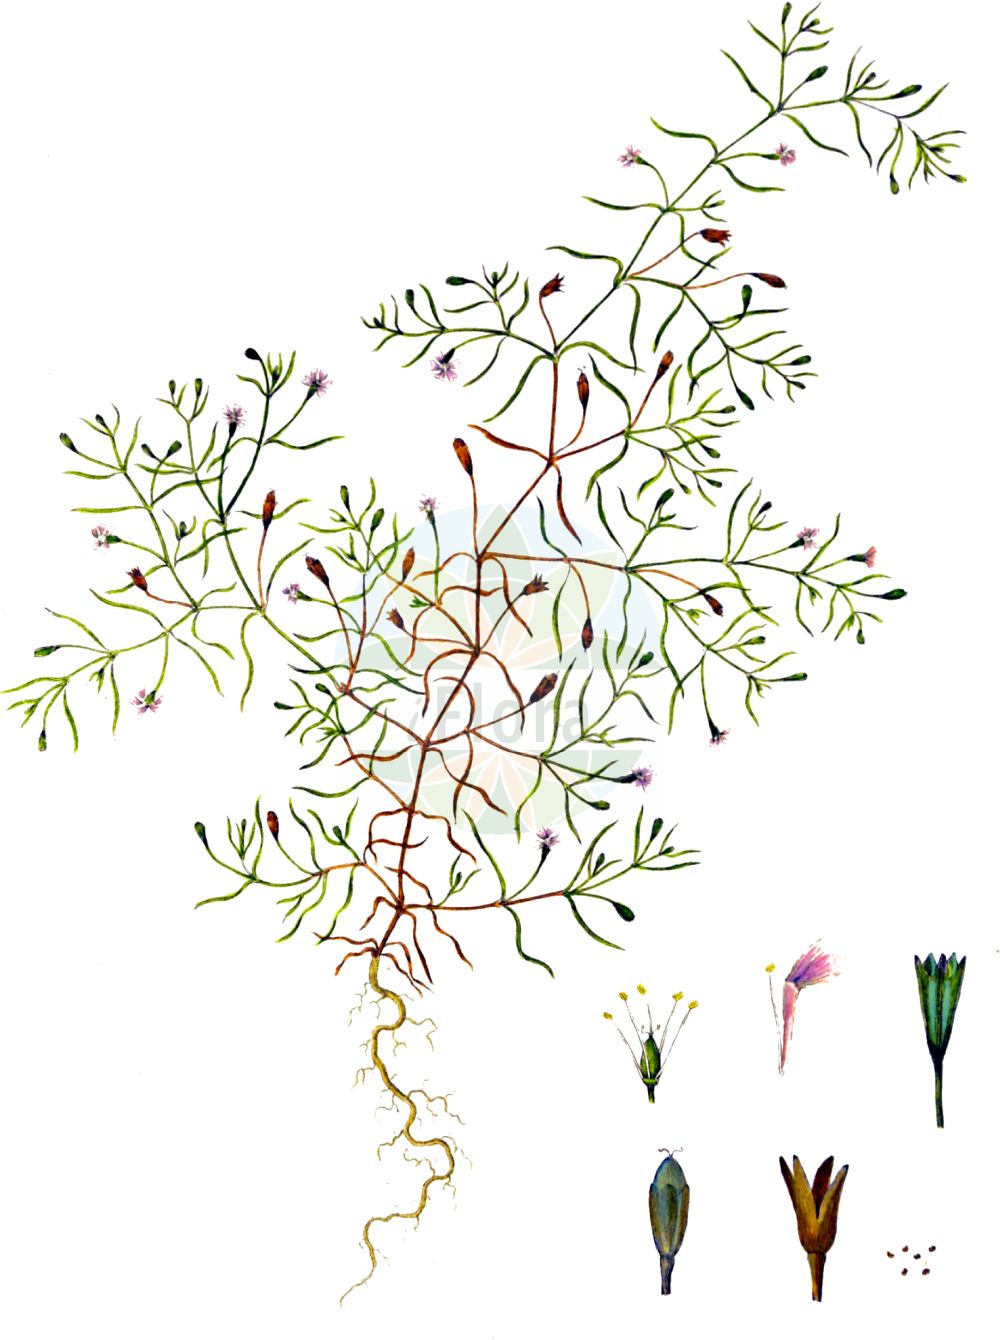 Historische Abbildung von Gypsophila muralis (Mauer-Gipskraut - Annual Gypsophila). Das Bild zeigt Blatt, Bluete, Frucht und Same. ---- Historical Drawing of Gypsophila muralis (Mauer-Gipskraut - Annual Gypsophila). The image is showing leaf, flower, fruit and seed.(Gypsophila muralis,Mauer-Gipskraut,Annual Gypsophila,Gypsophila muralis,Gypsophila muralis L. var.,Gypsophila stepposa,Mauer-Gipskraut,Annual Gypsophila,Low Baby's-breath,Common Chalkplant,Wall Gypsophila,Gypsophila,Gipskraut,Baby's-breath,Caryophyllaceae,Nelkengewächse,Pink family,Blatt,Bluete,Frucht,Same,leaf,flower,fruit,seed,Oeder (1761-1883))